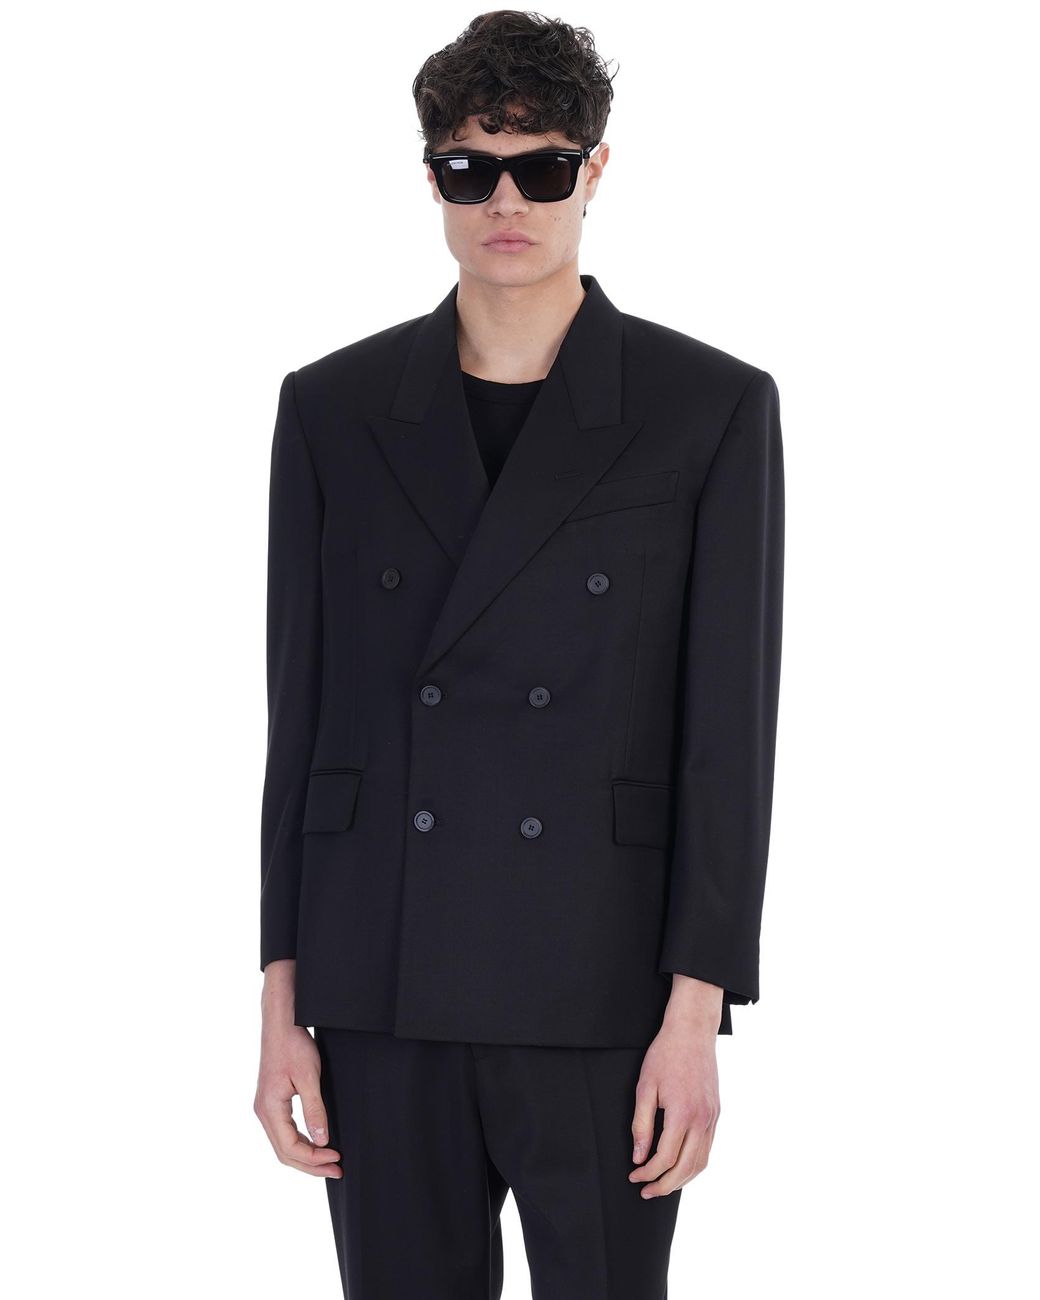 Balenciaga Blazer In Black Wool for Men | Lyst